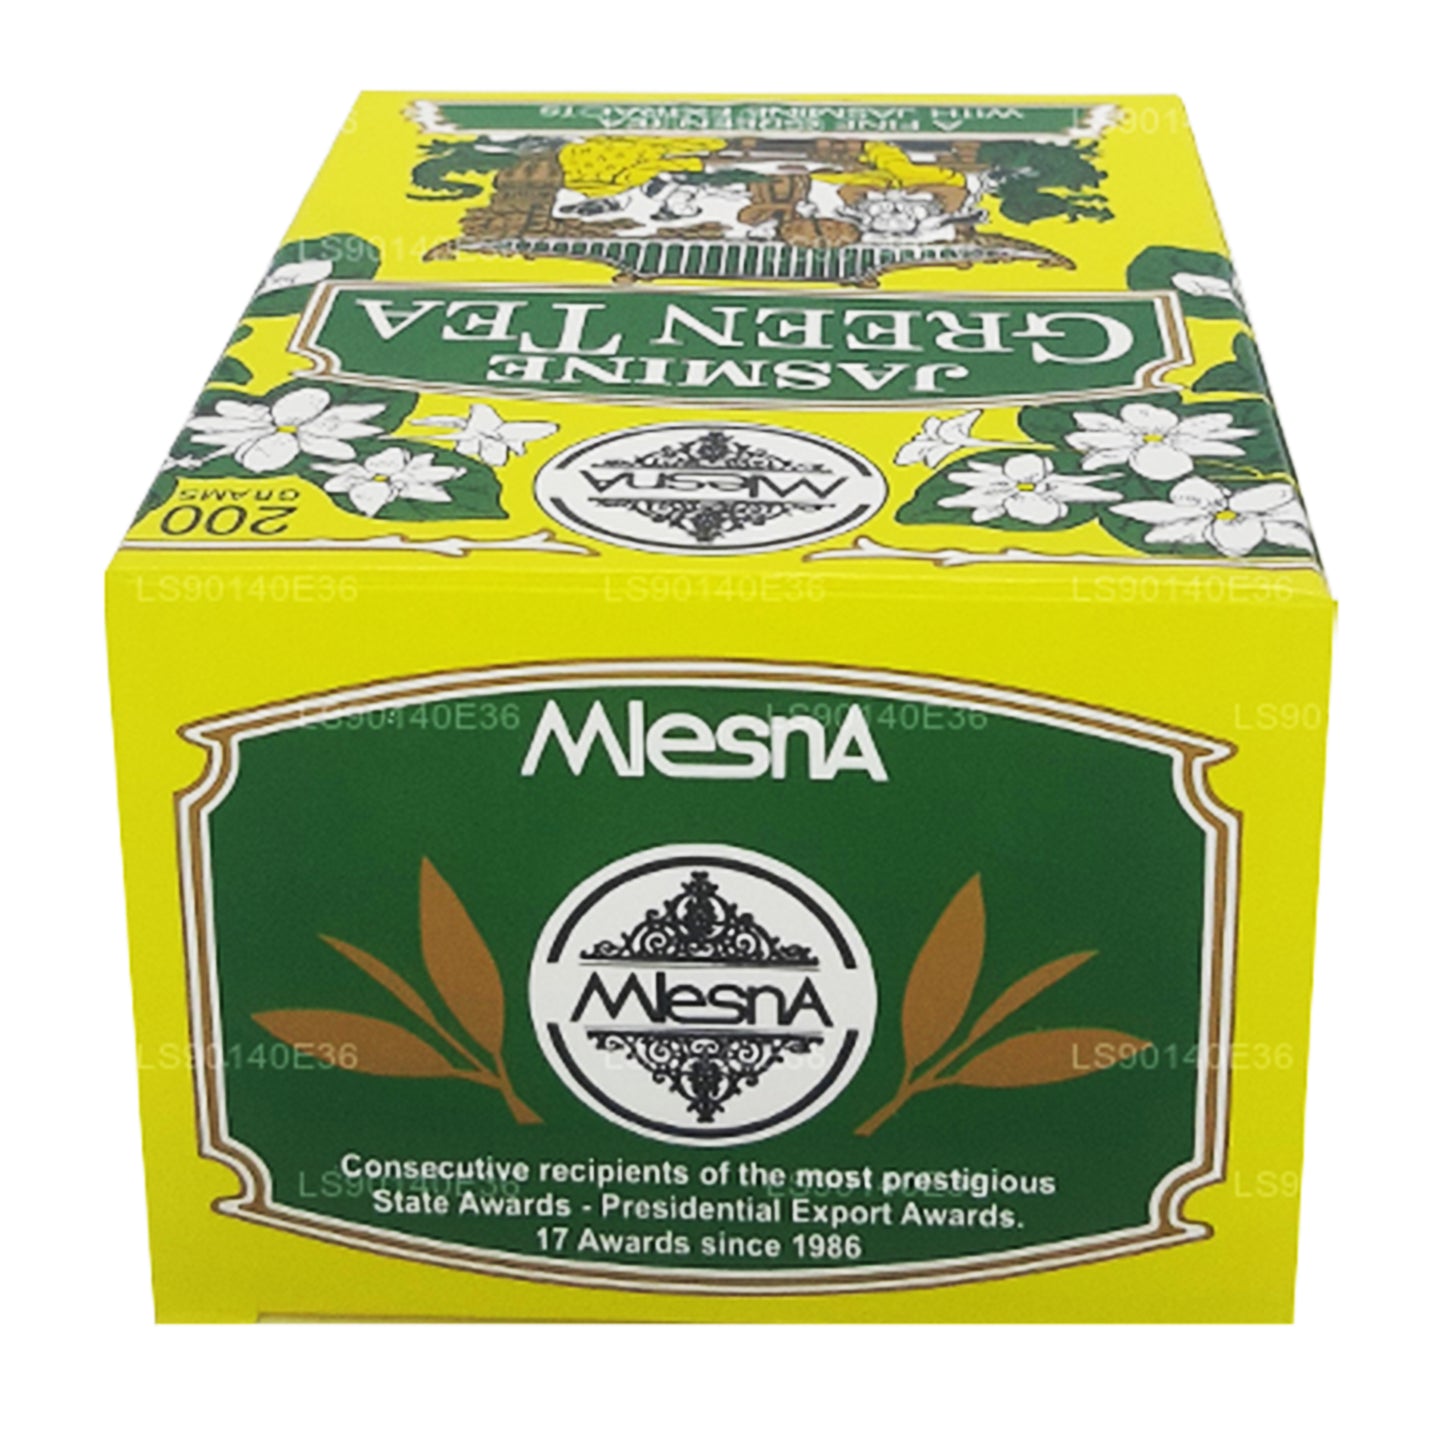 Mlesna Losse groene thee met jasmijnsmaak (200 g)